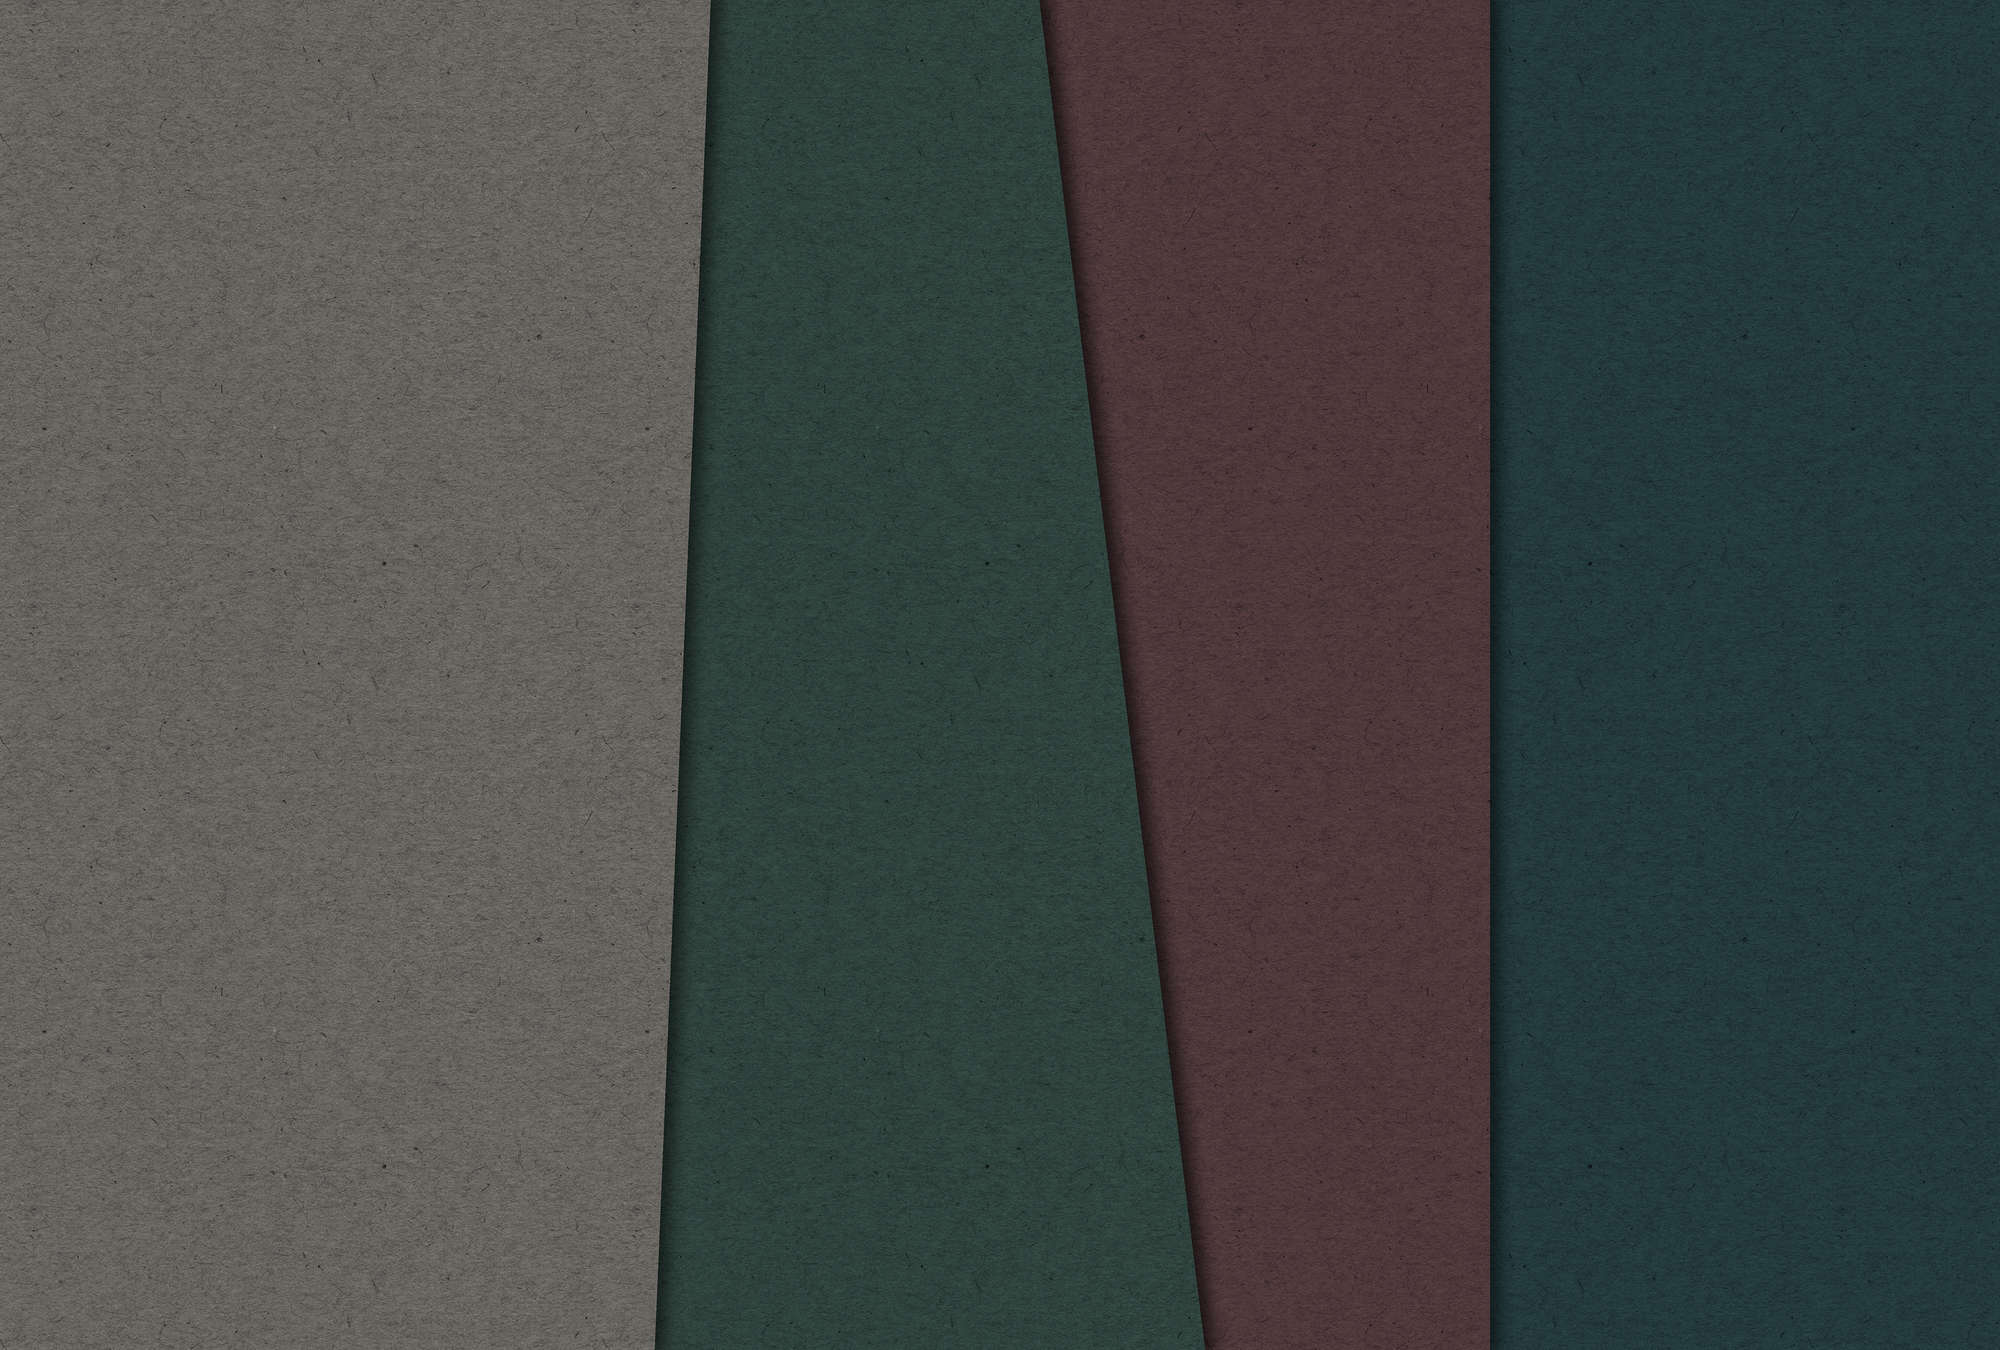             Layered Cardboard 1 - Fototapete mit dunklen Farbflächen in Pappe Struktur – Braun, Grün | Struktur Vlies
        